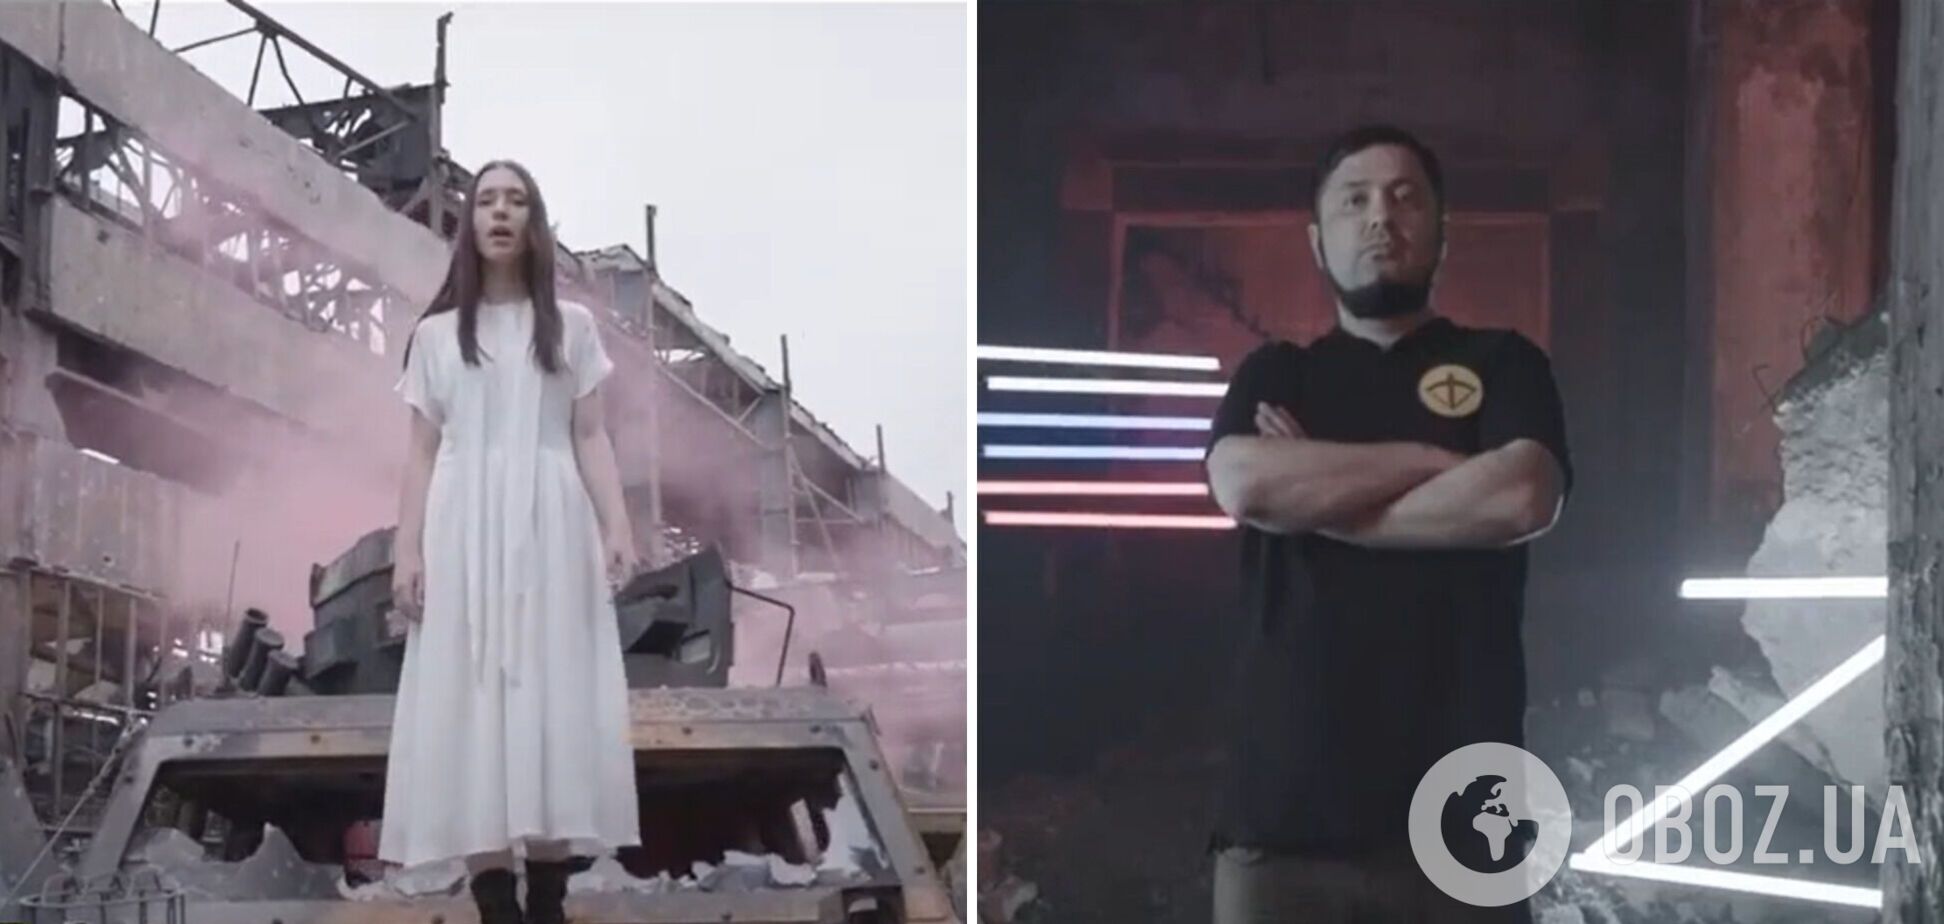 Верх цинизма: пропагандисты сняли клип на руинах 'Азовстали' на песню 'Пливе кача' на украинском языке